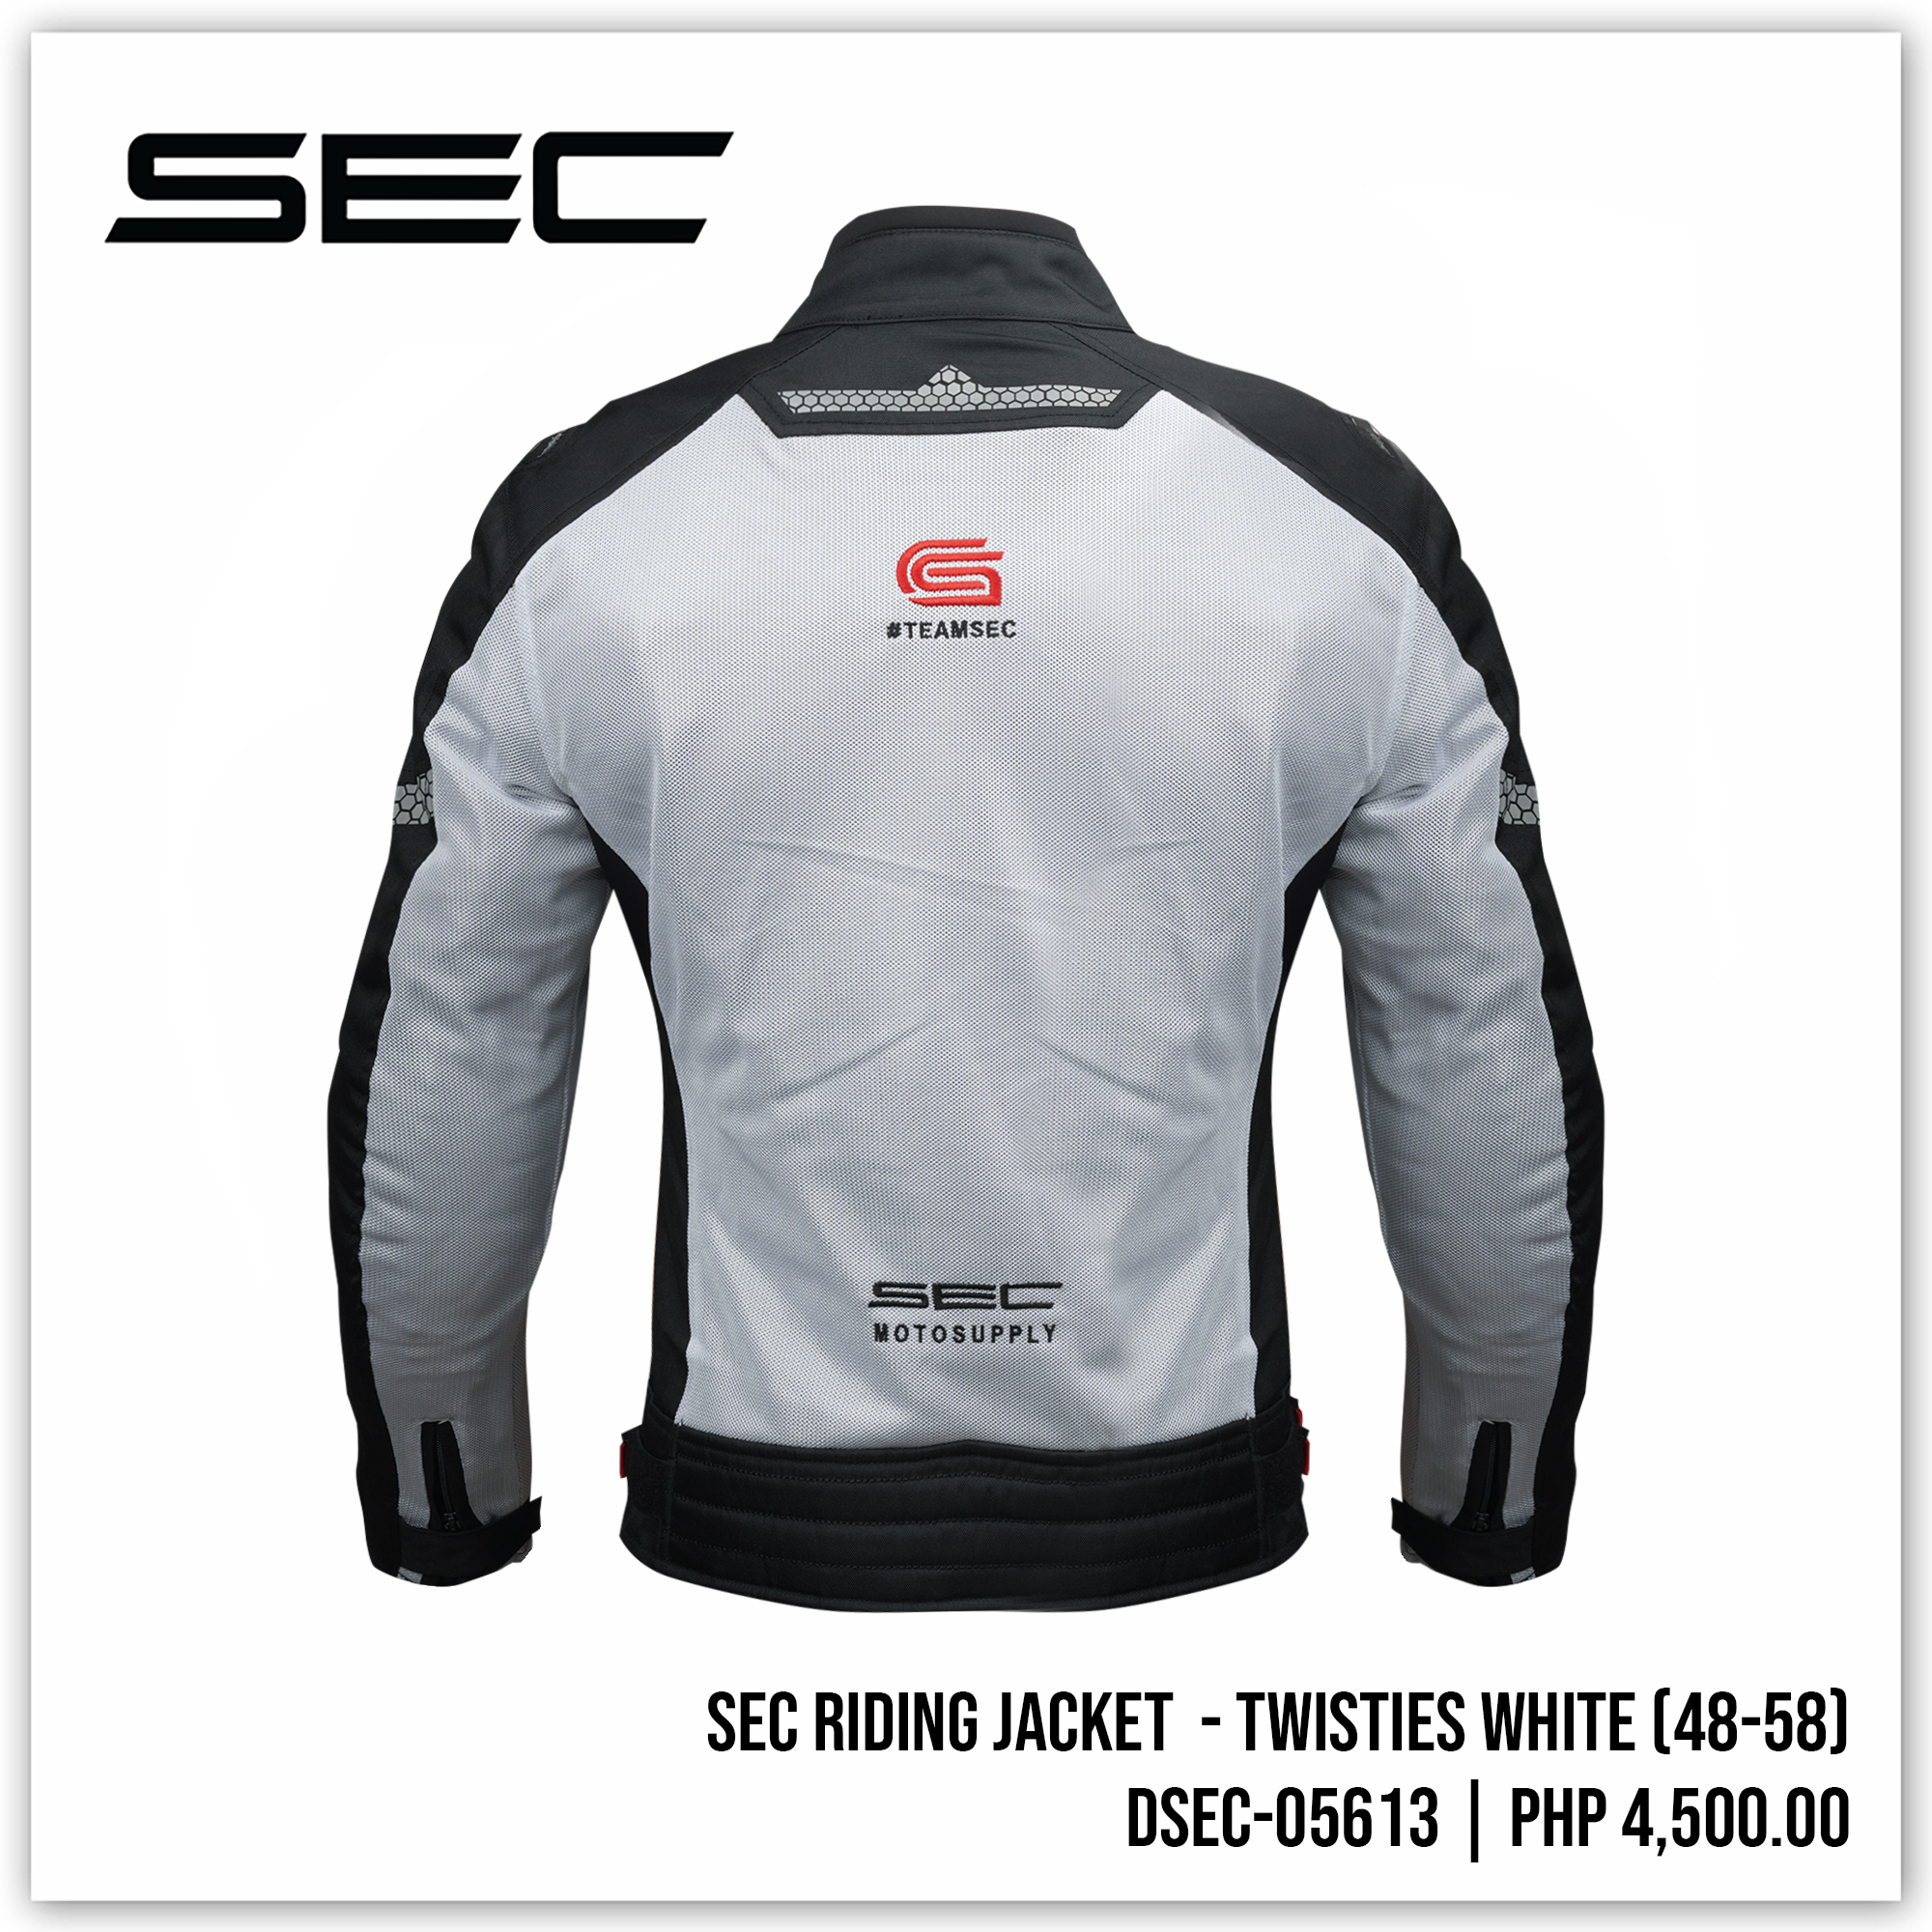 SEC Riding Jacket - Twisties White